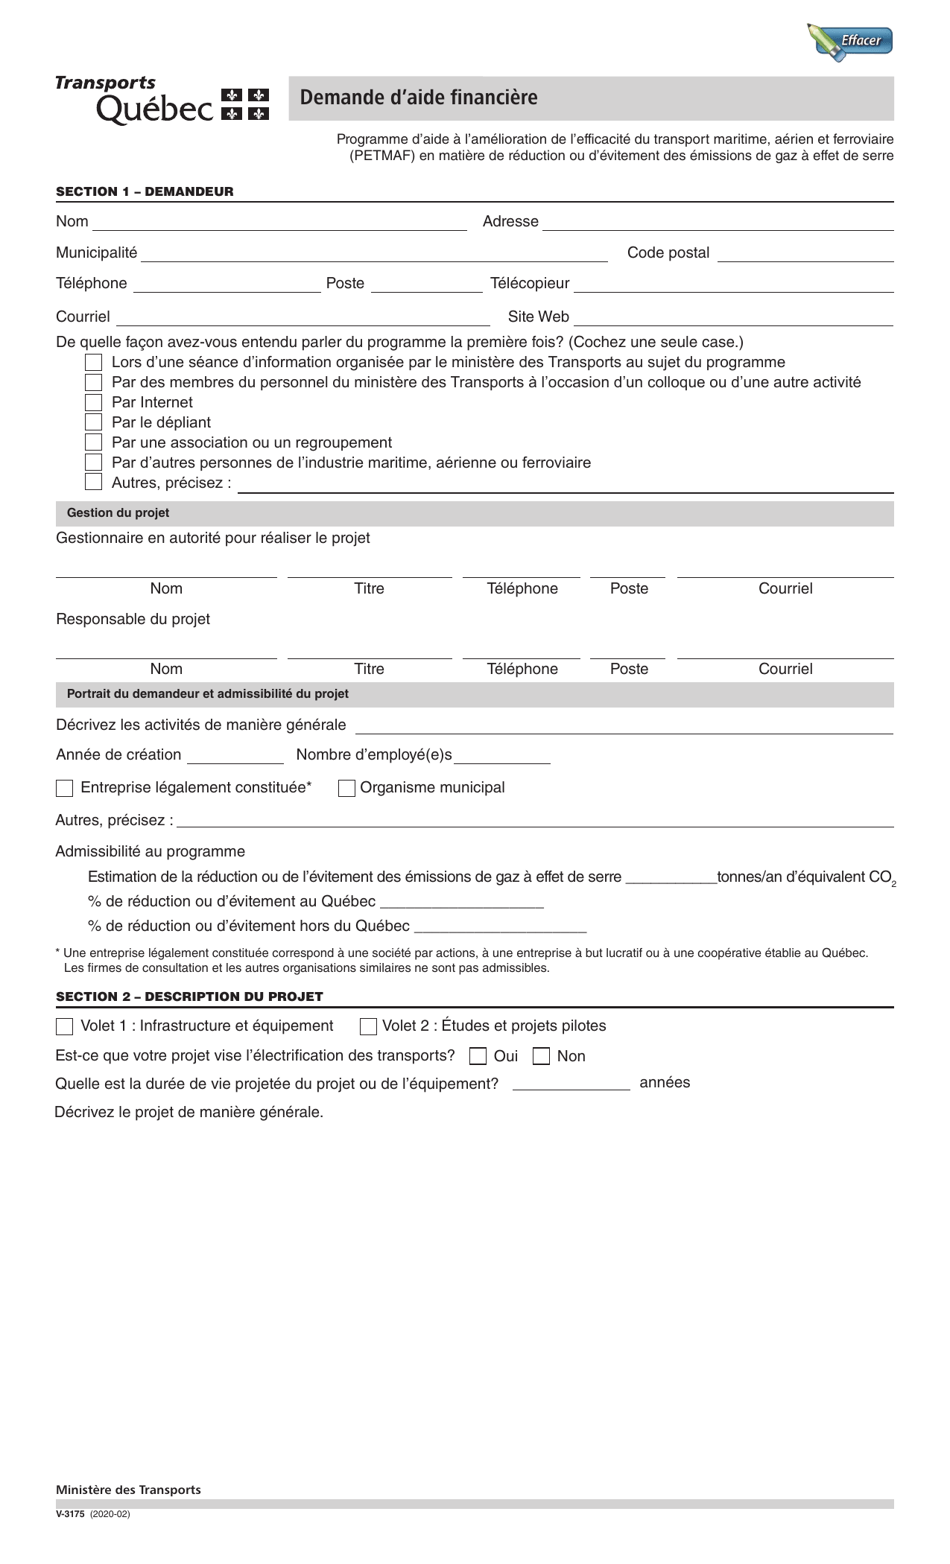 Forme V-3175 Demande Daide Financiere - Quebec, Canada (French), Page 1